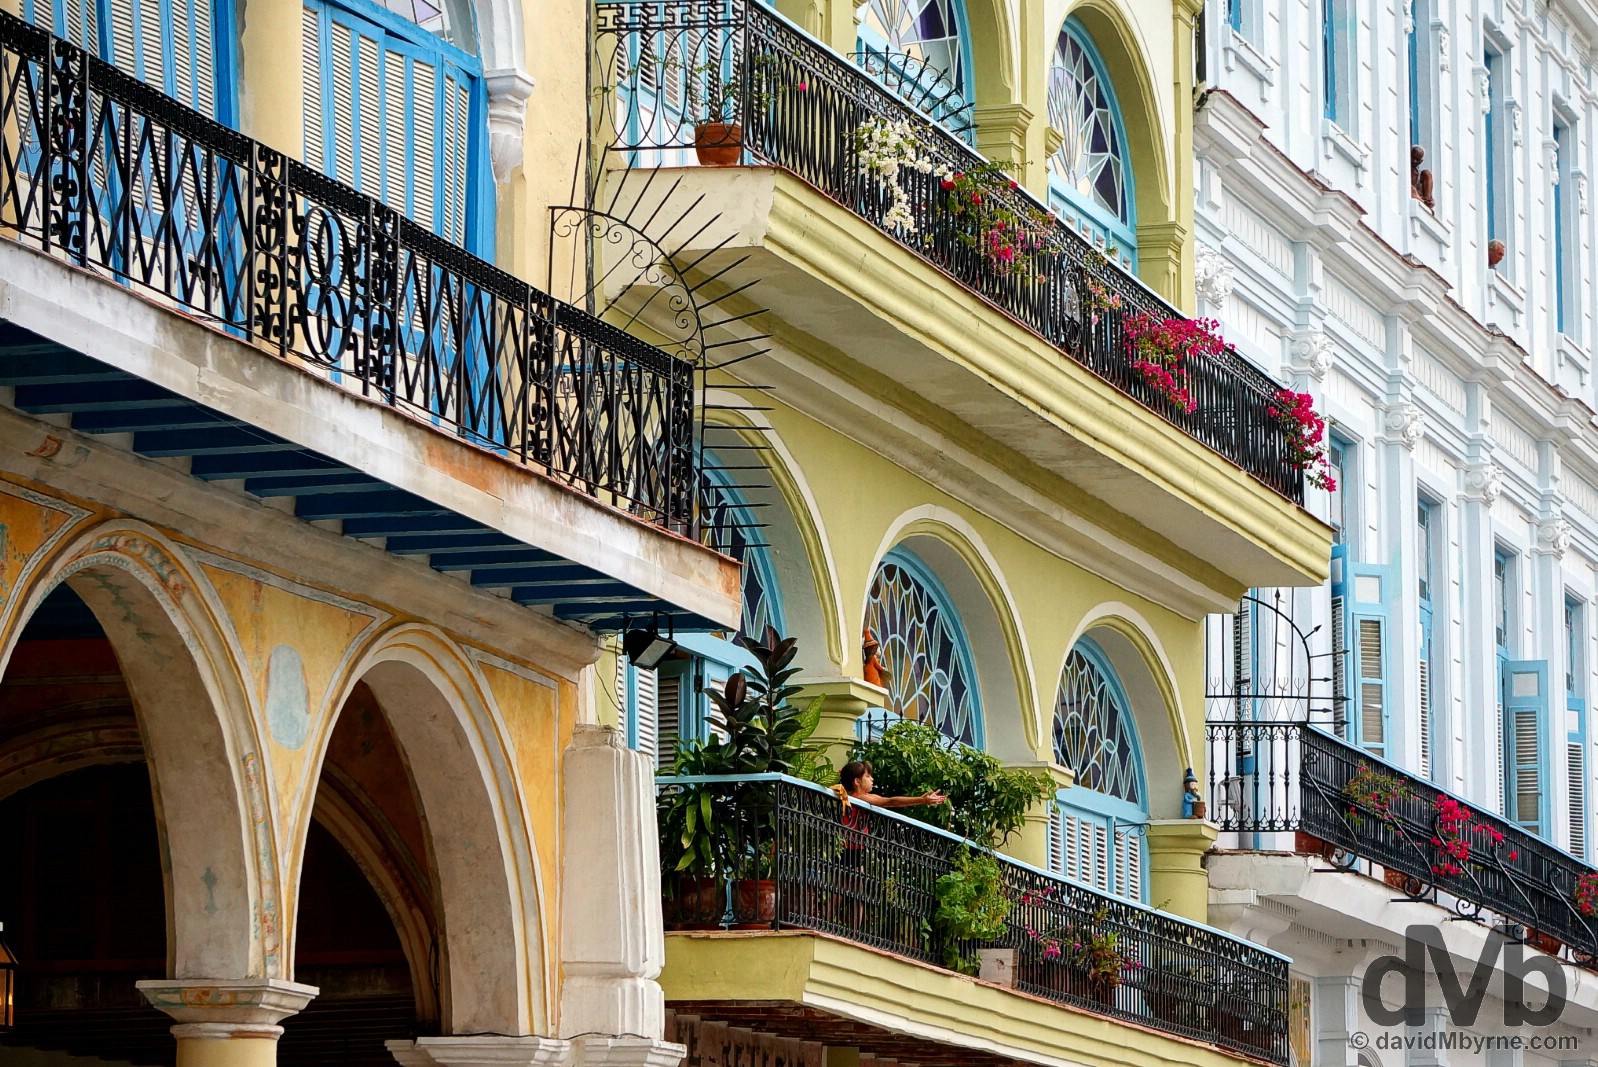 Restored buildings overlooking Plaza Vieja in Habana Vieja/Old Havana, Havana, Cuba. April 30, 2015. 